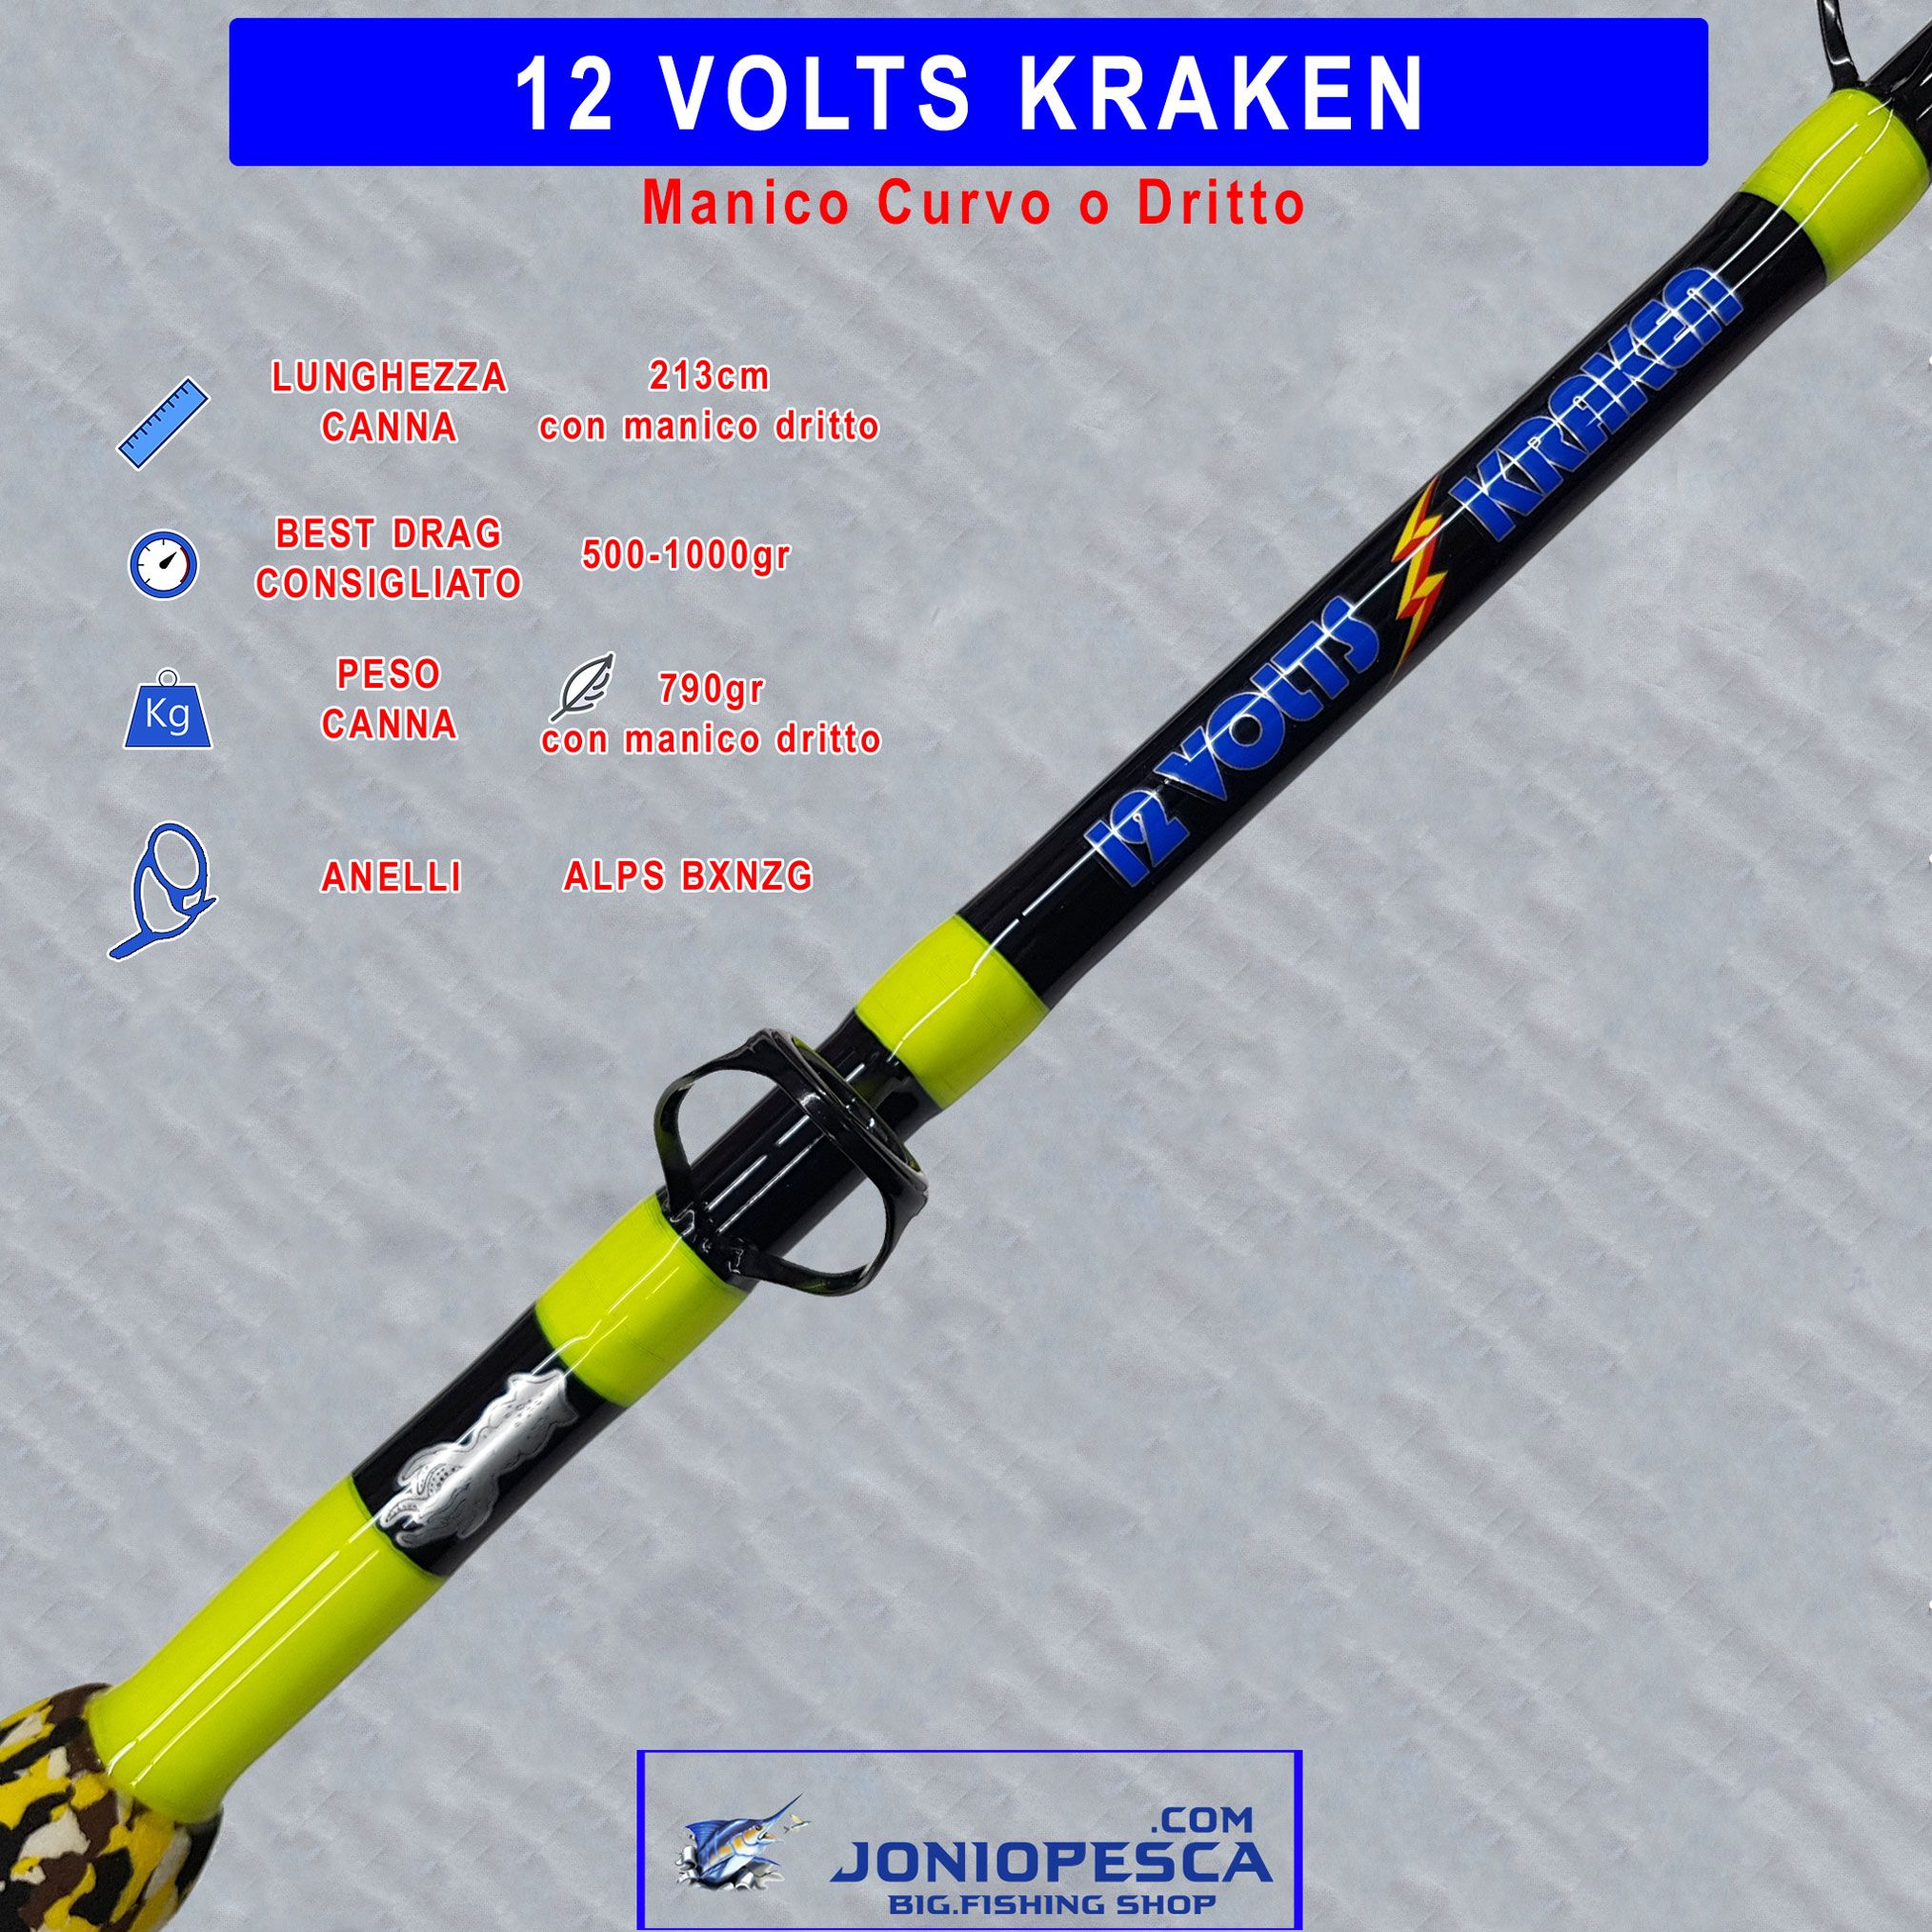 12volts-kraken-yellow-2